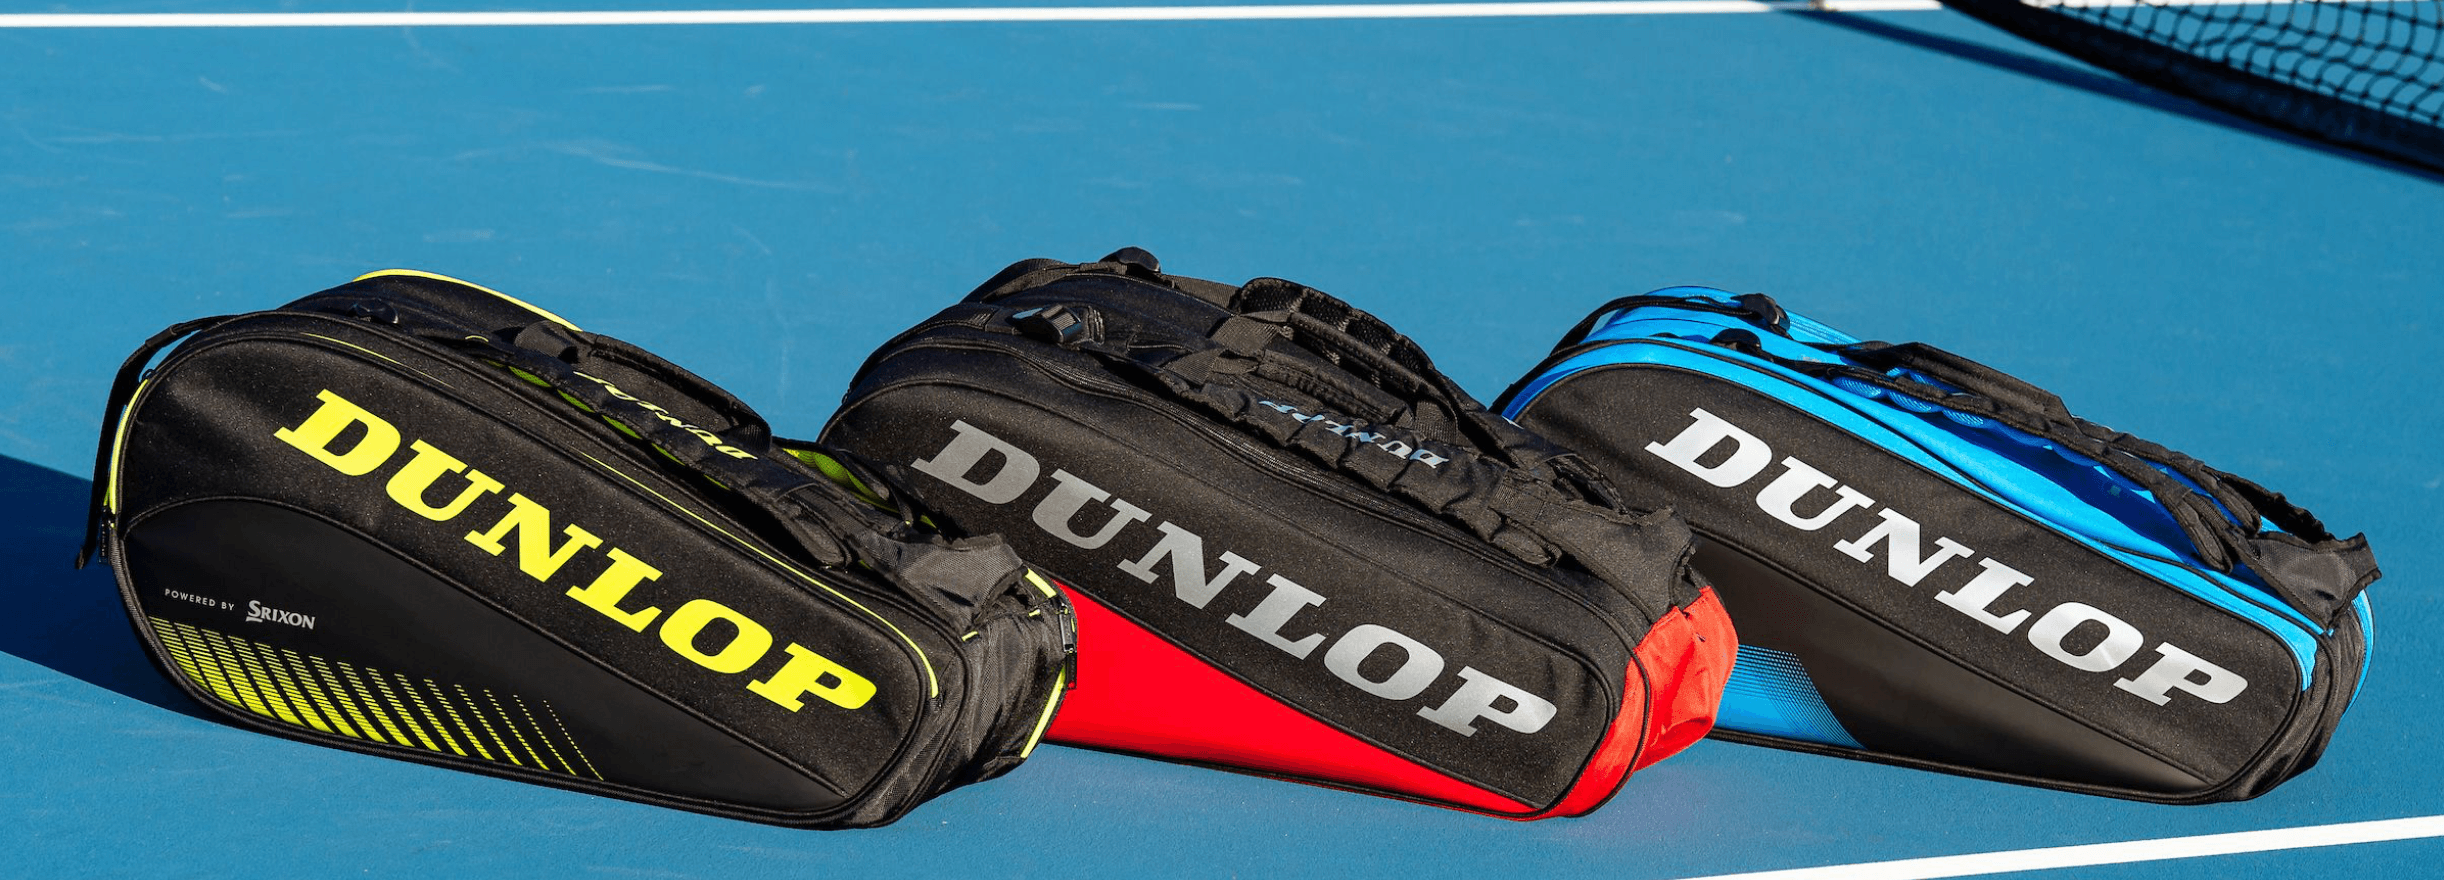 Dunlop Tennis Bags Racquet Point